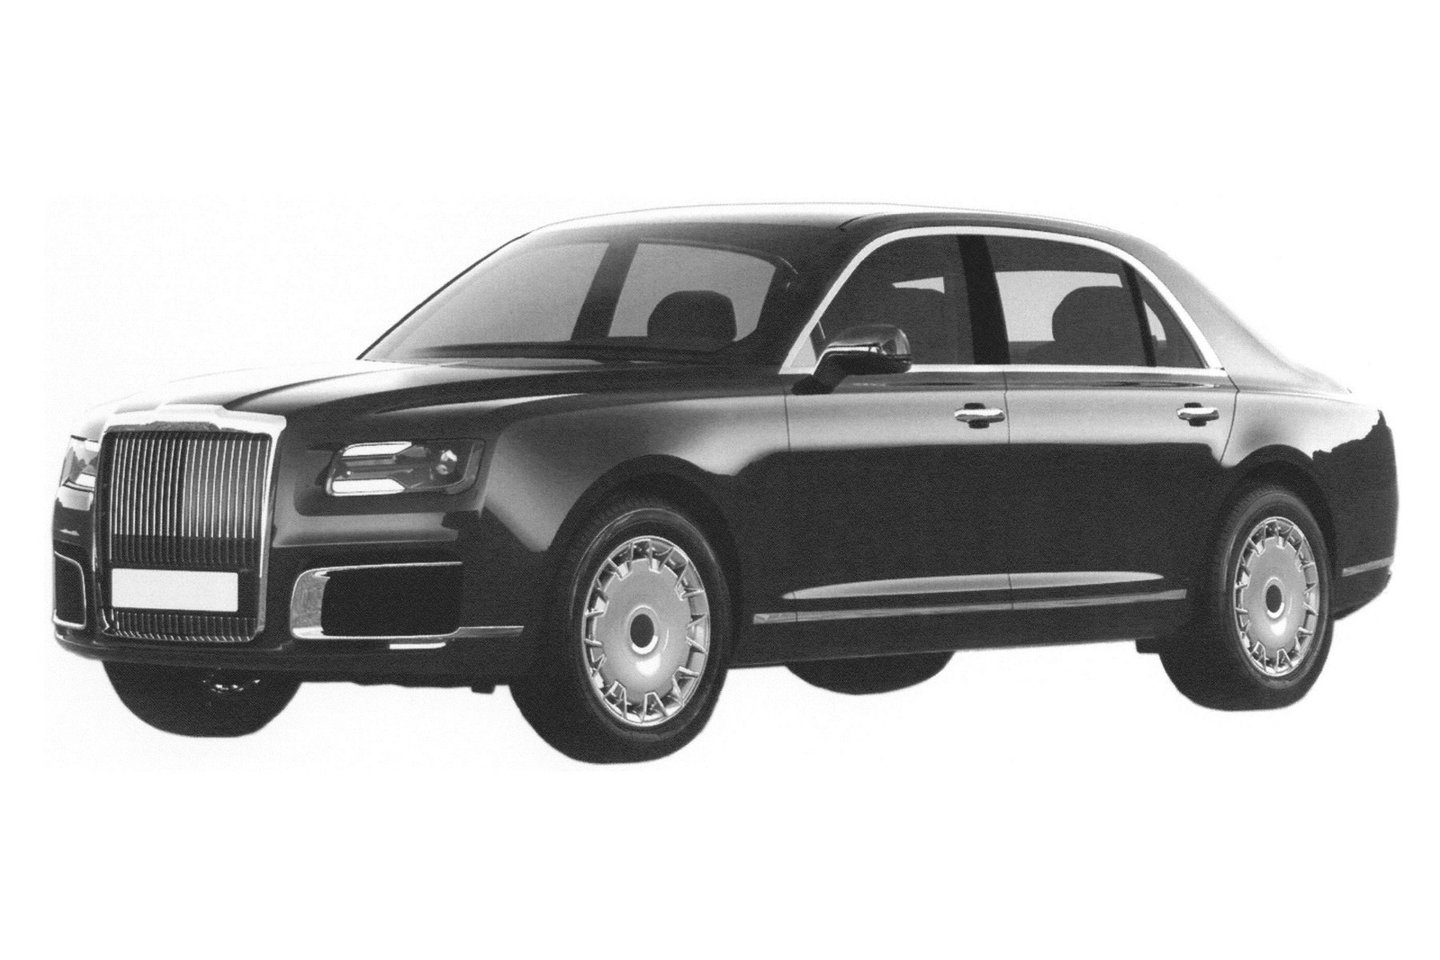 Pirmąjį projekto „Kortežas“ automobilį bus galima išvysti per prezidento Vladimiro Putino inauguraciją. <br>Gamintojo nuotr.